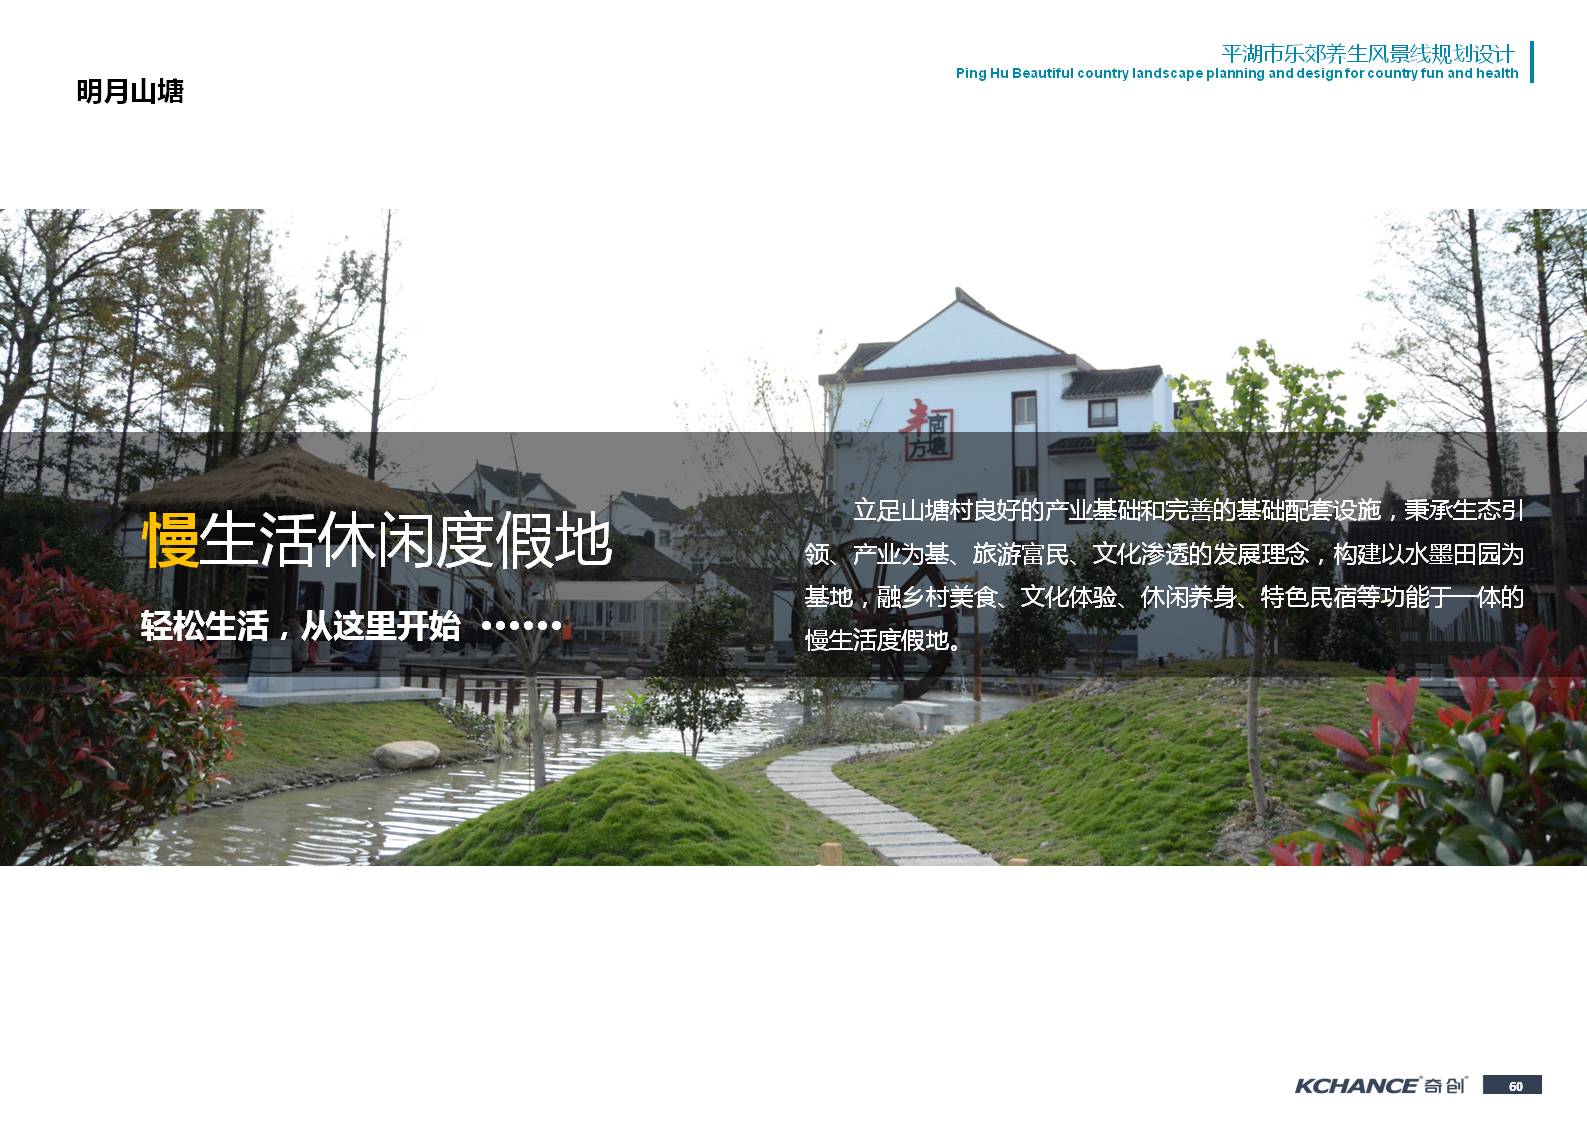 浙江省平湖市美丽乡村北线规划设计